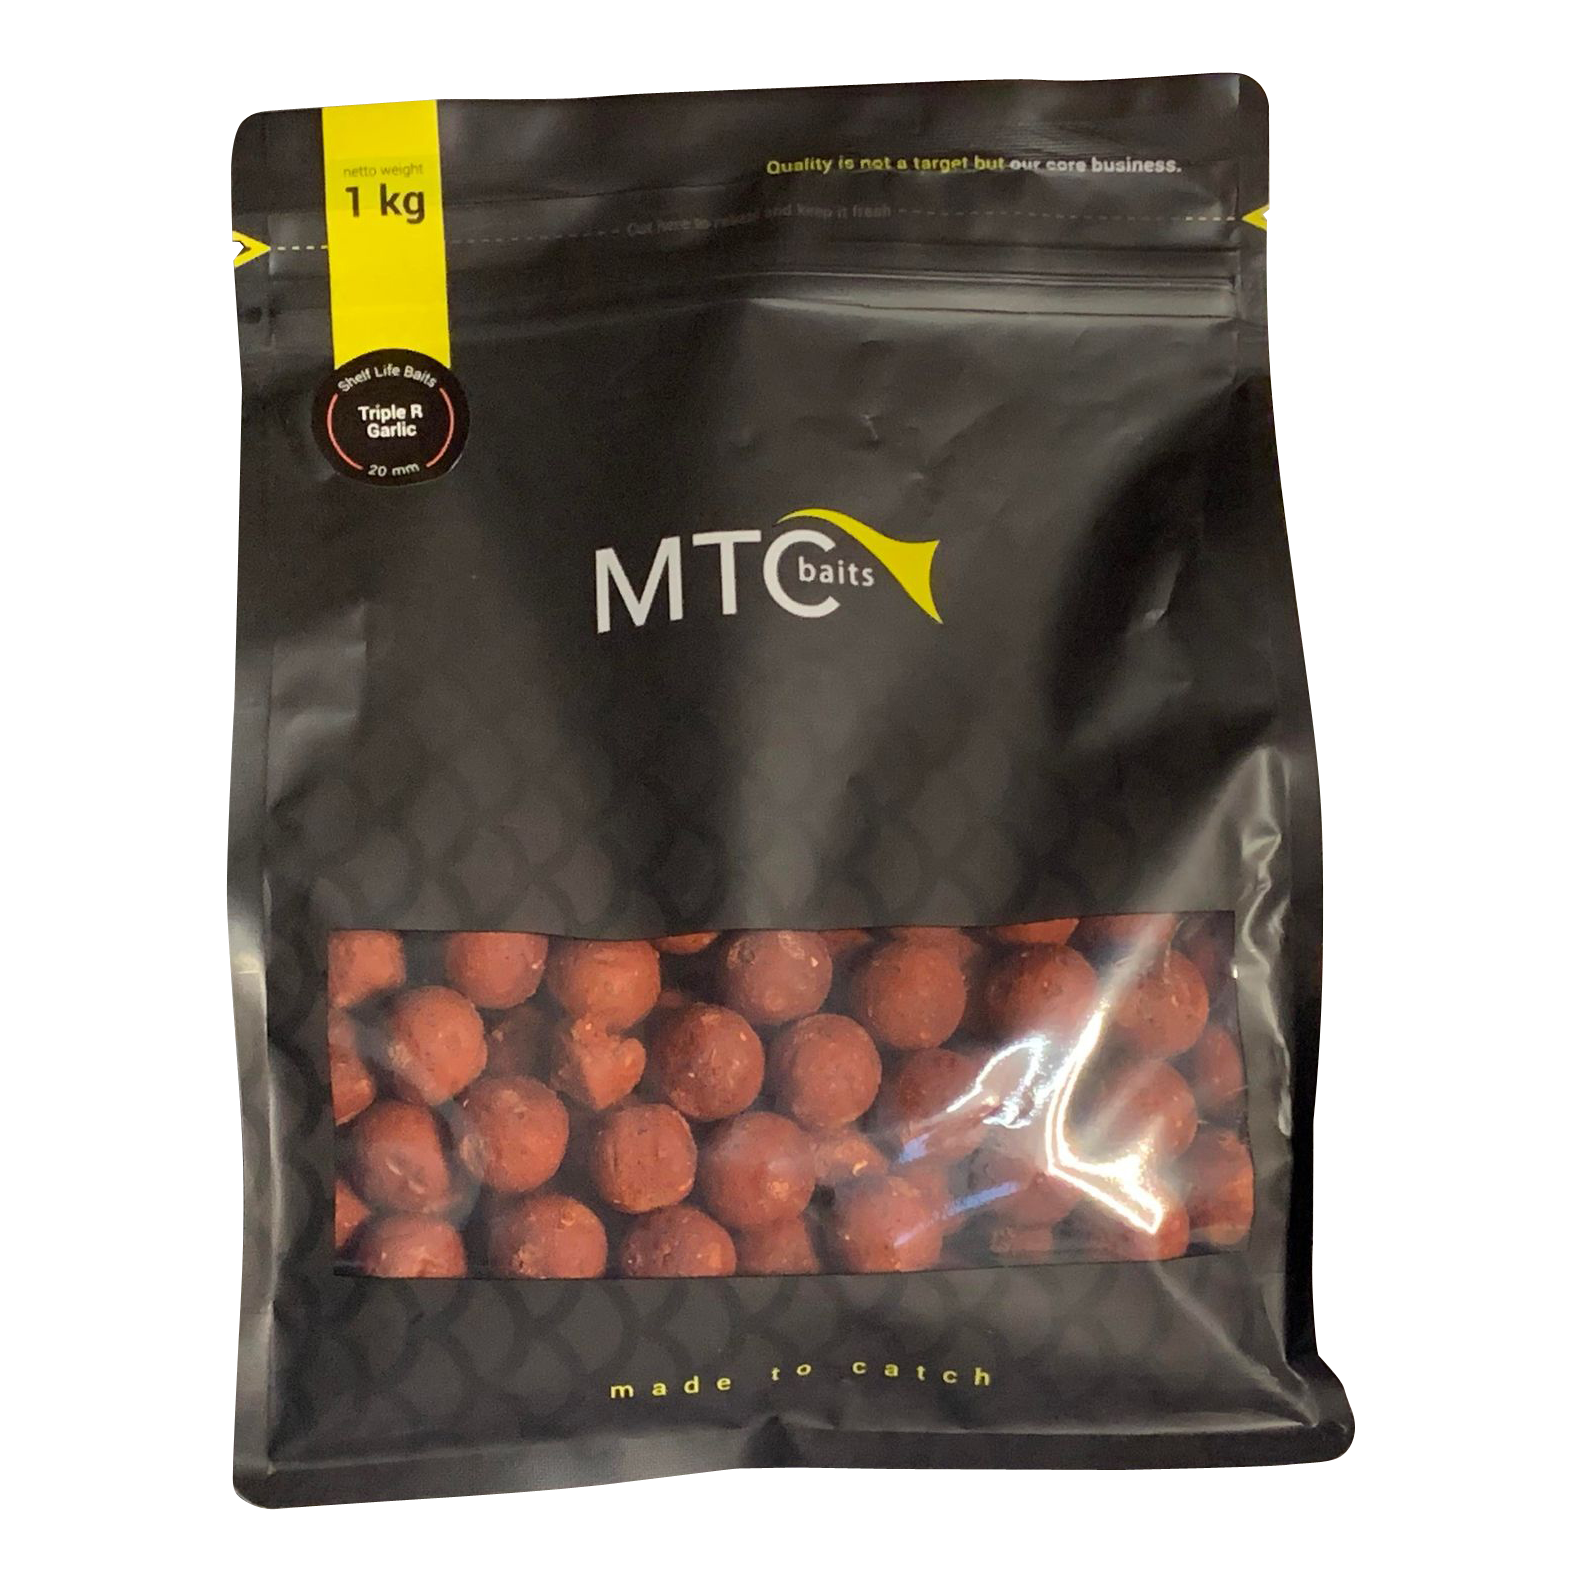 MTC Baits Readymades Triple R Garlic 5 kg